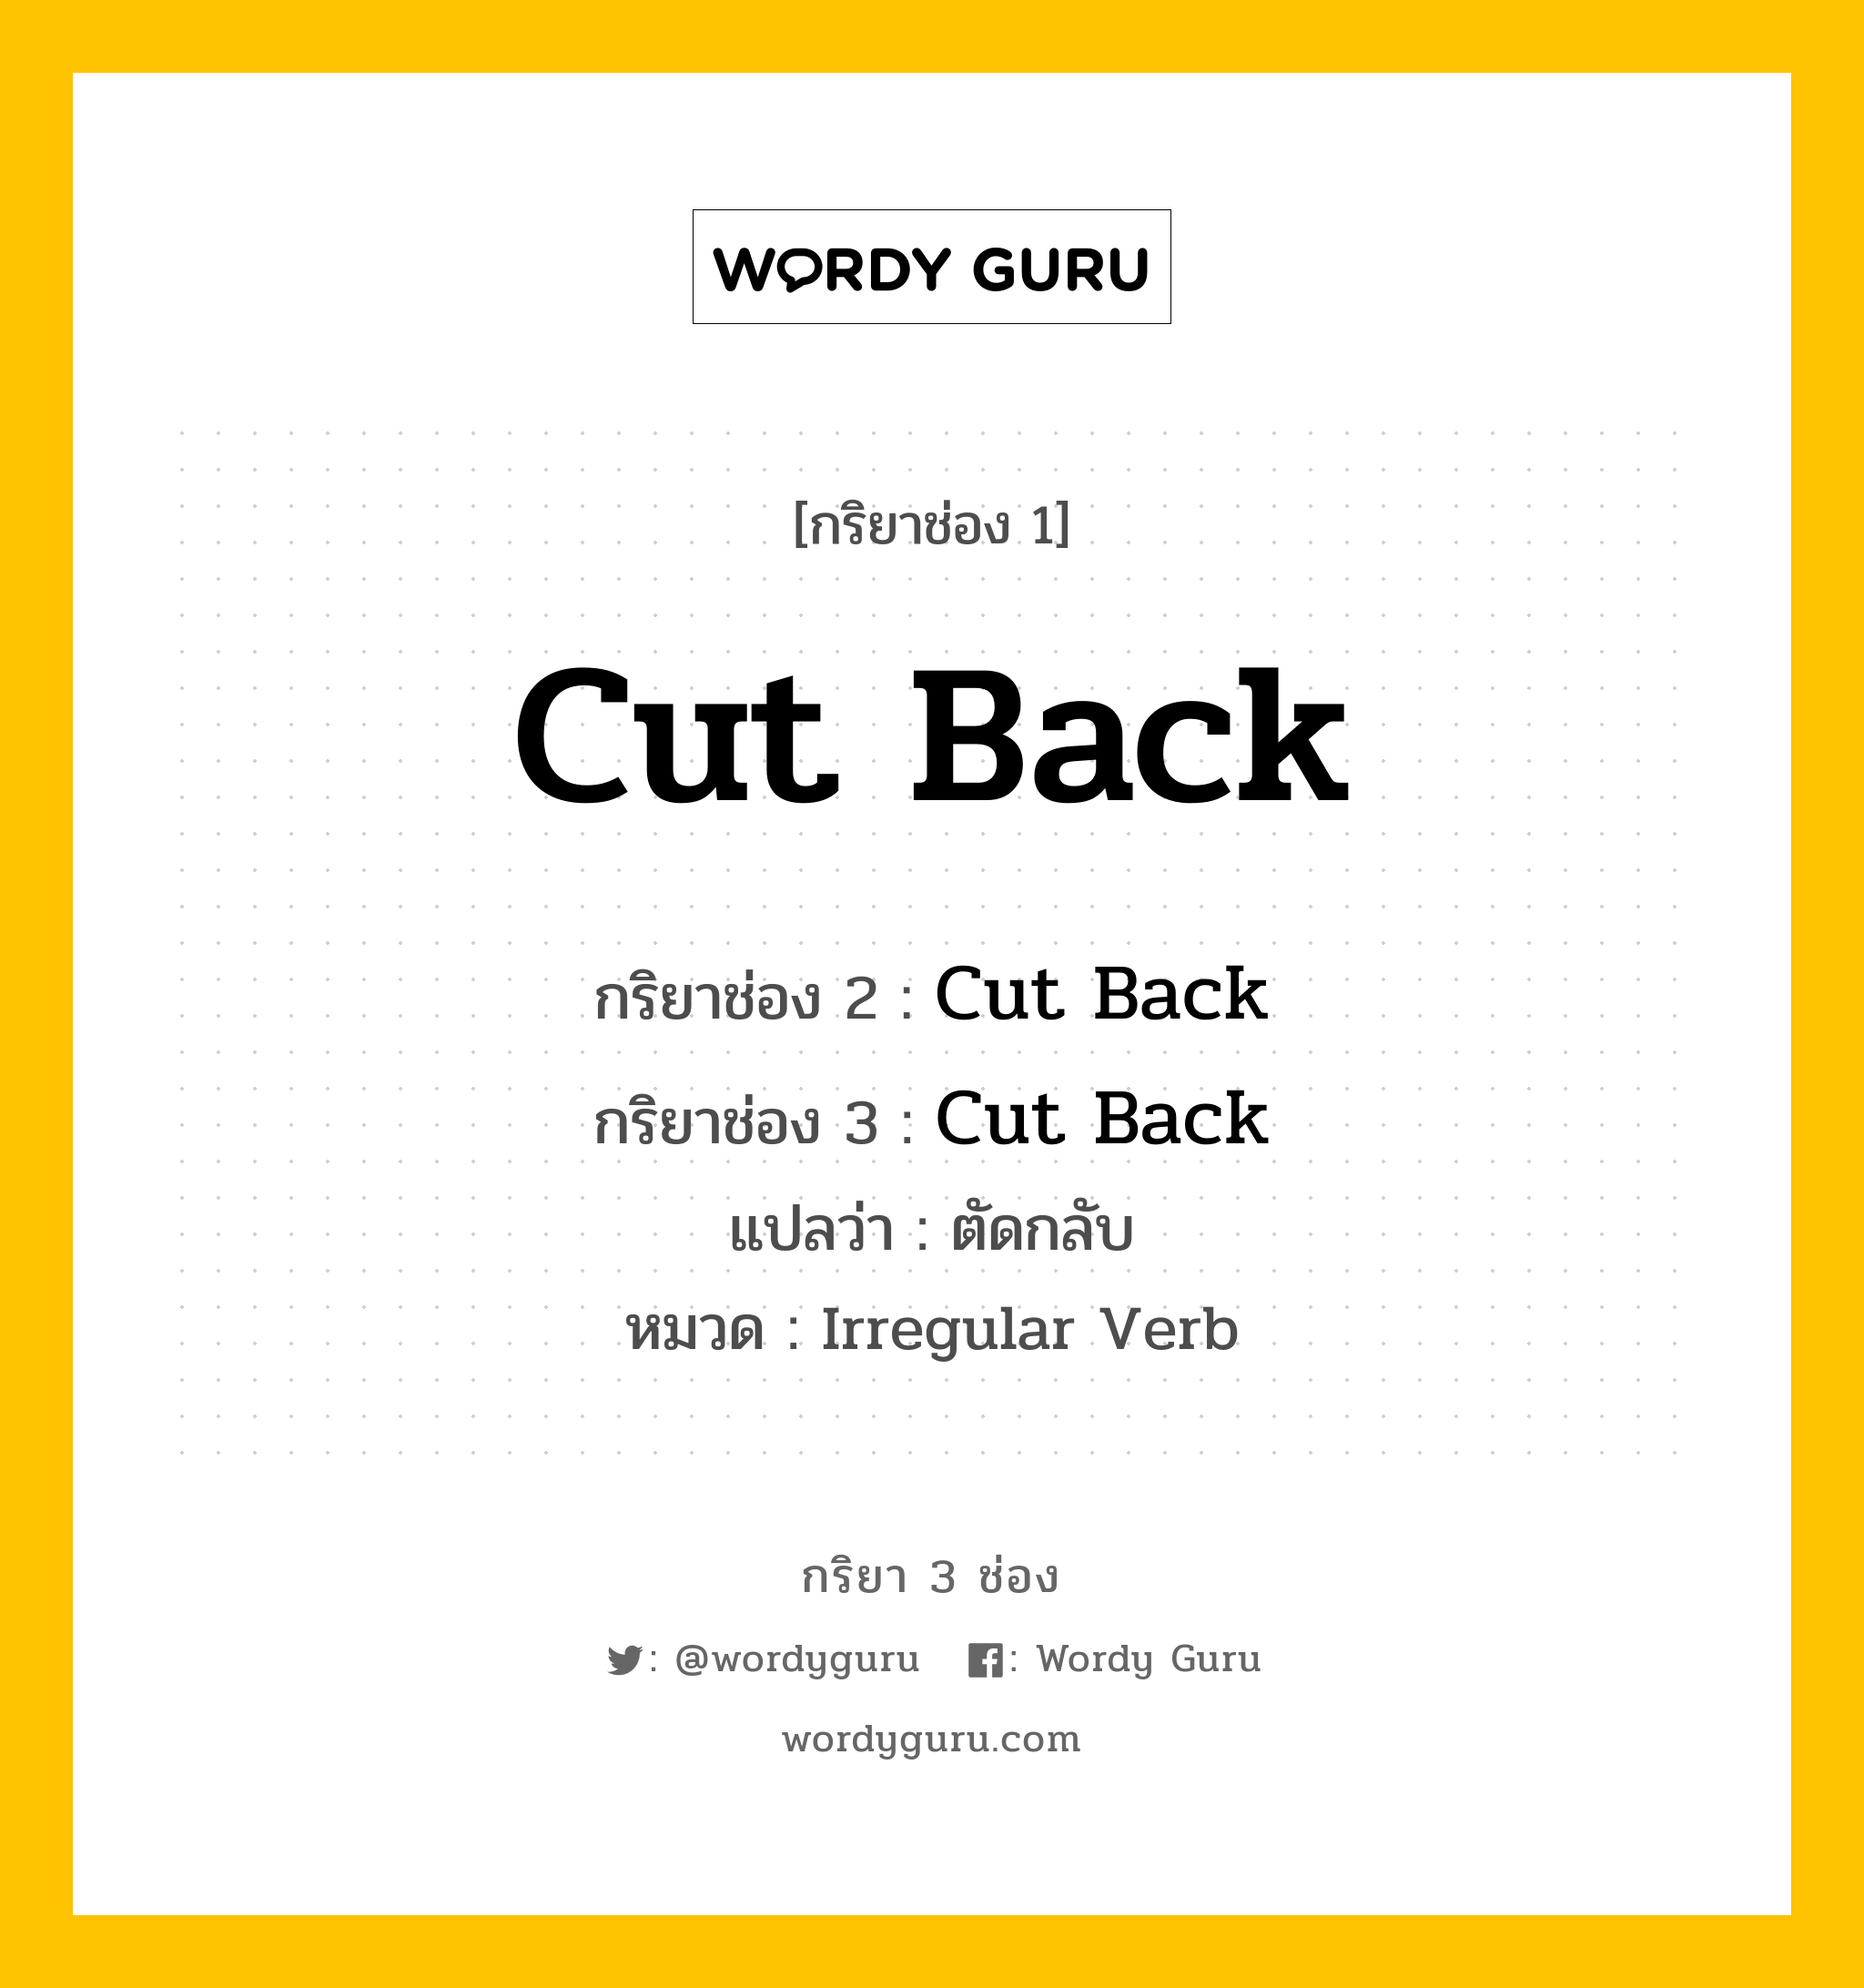 กริยา 3 ช่อง: Cut Back ช่อง 2 Cut Back ช่อง 3 คืออะไร, กริยาช่อง 1 Cut Back กริยาช่อง 2 Cut Back กริยาช่อง 3 Cut Back แปลว่า ตัดกลับ หมวด Irregular Verb หมวด Irregular Verb